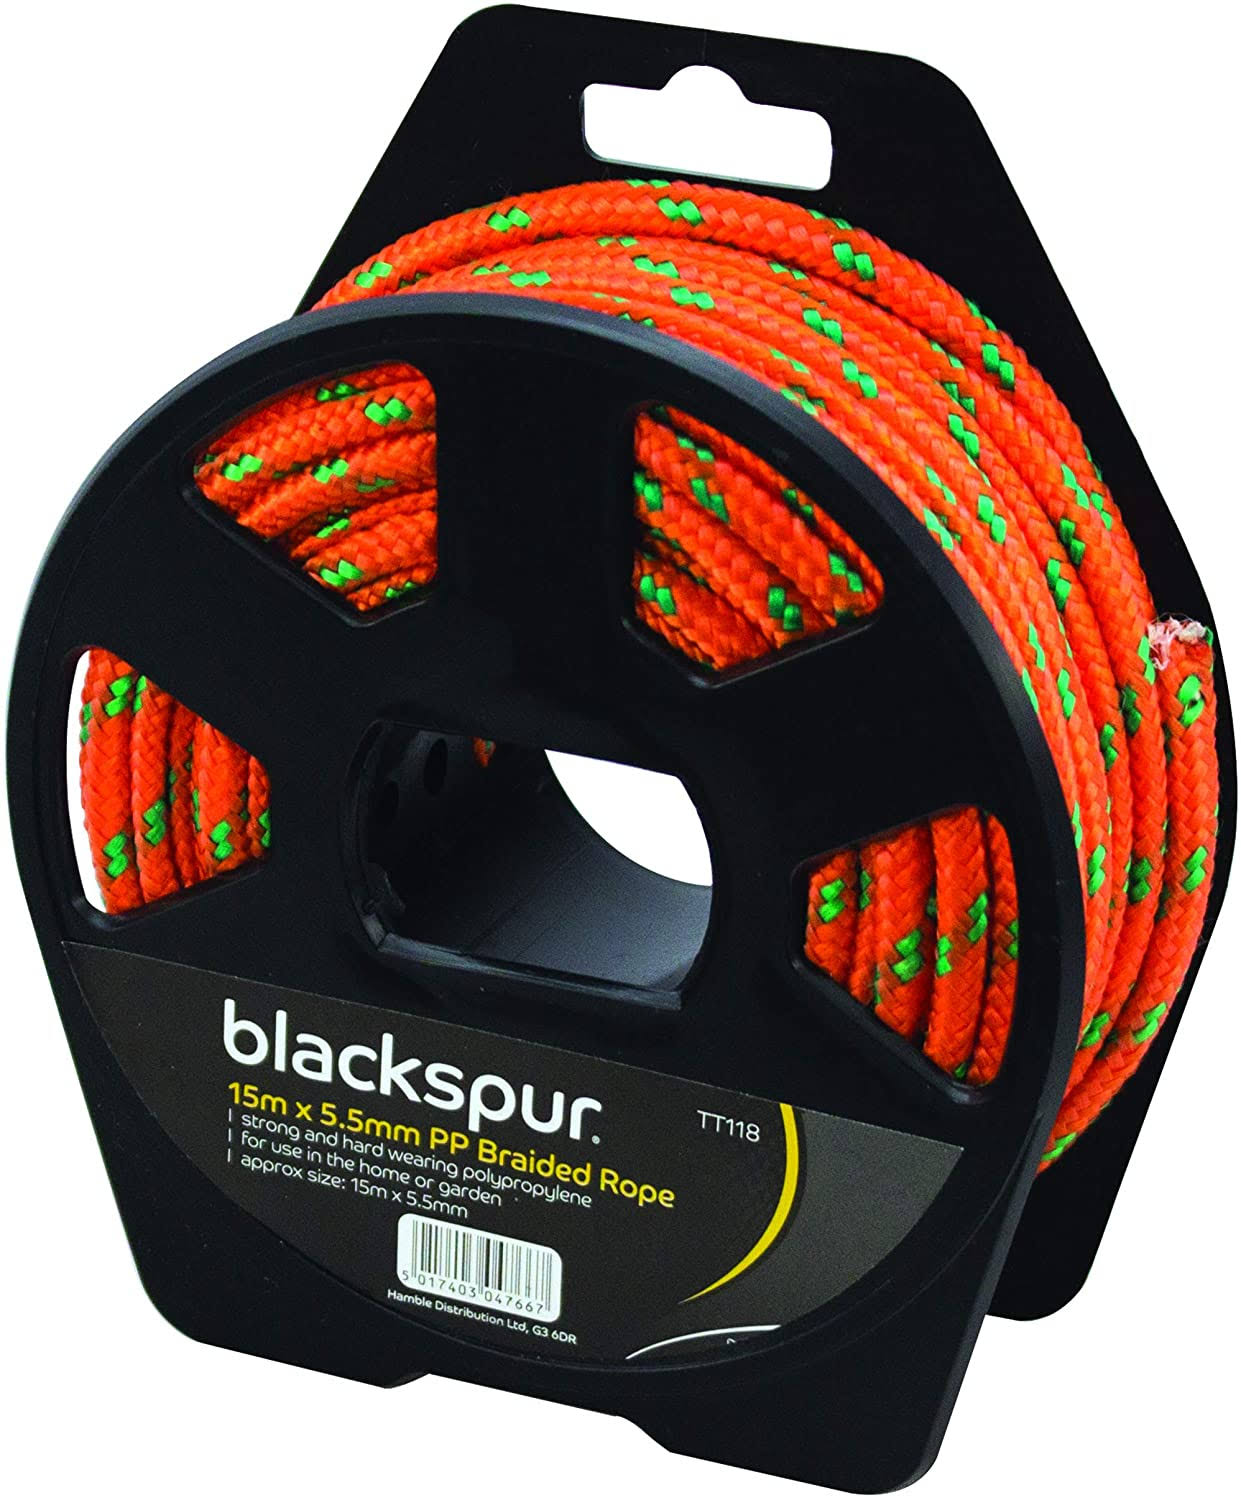 Blackspur Pp Braided Rope - 15mx6mm